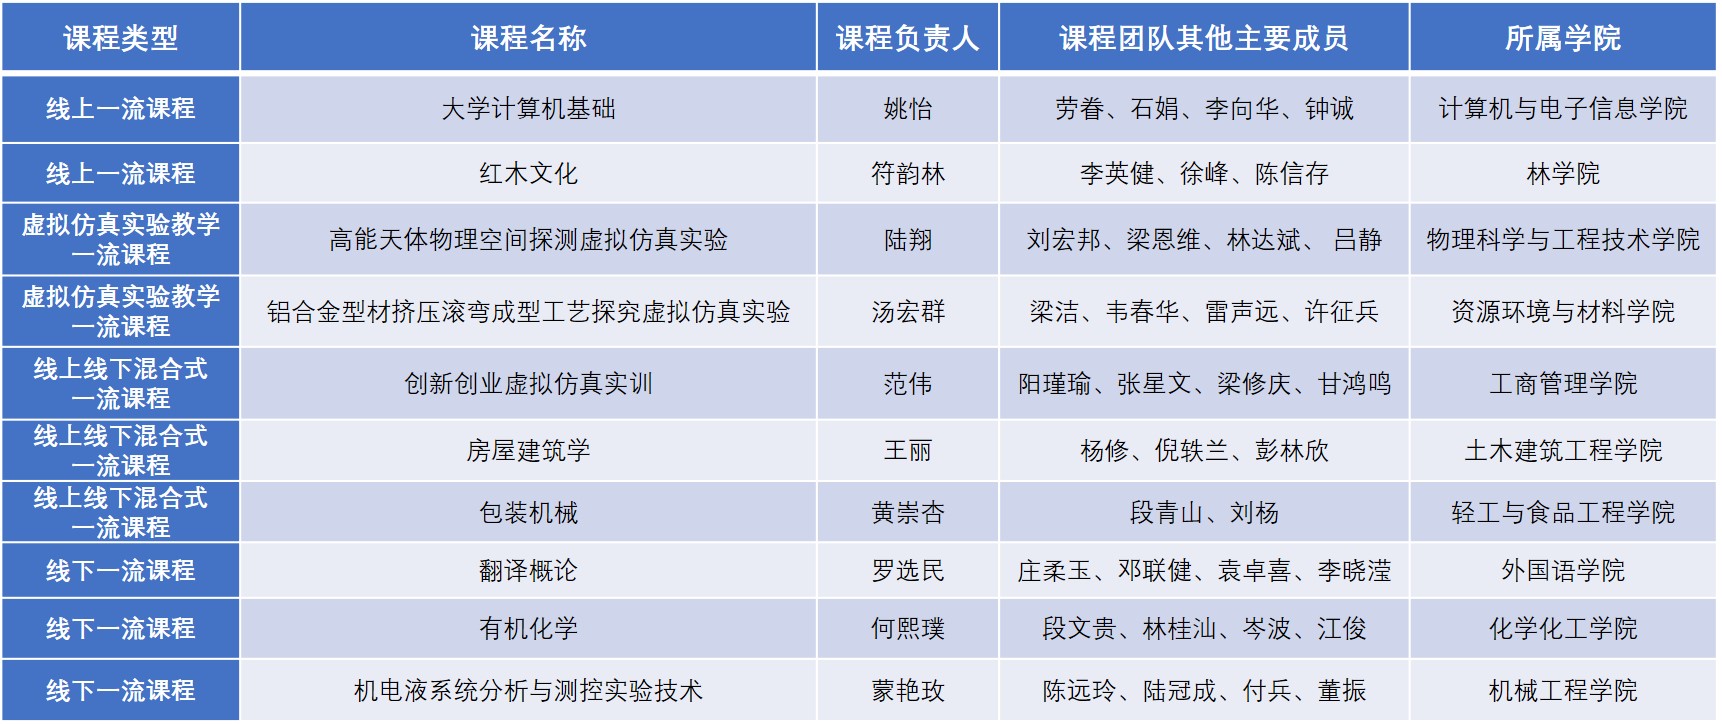 广西大学第二批国家级一流本科课程名单.jpg